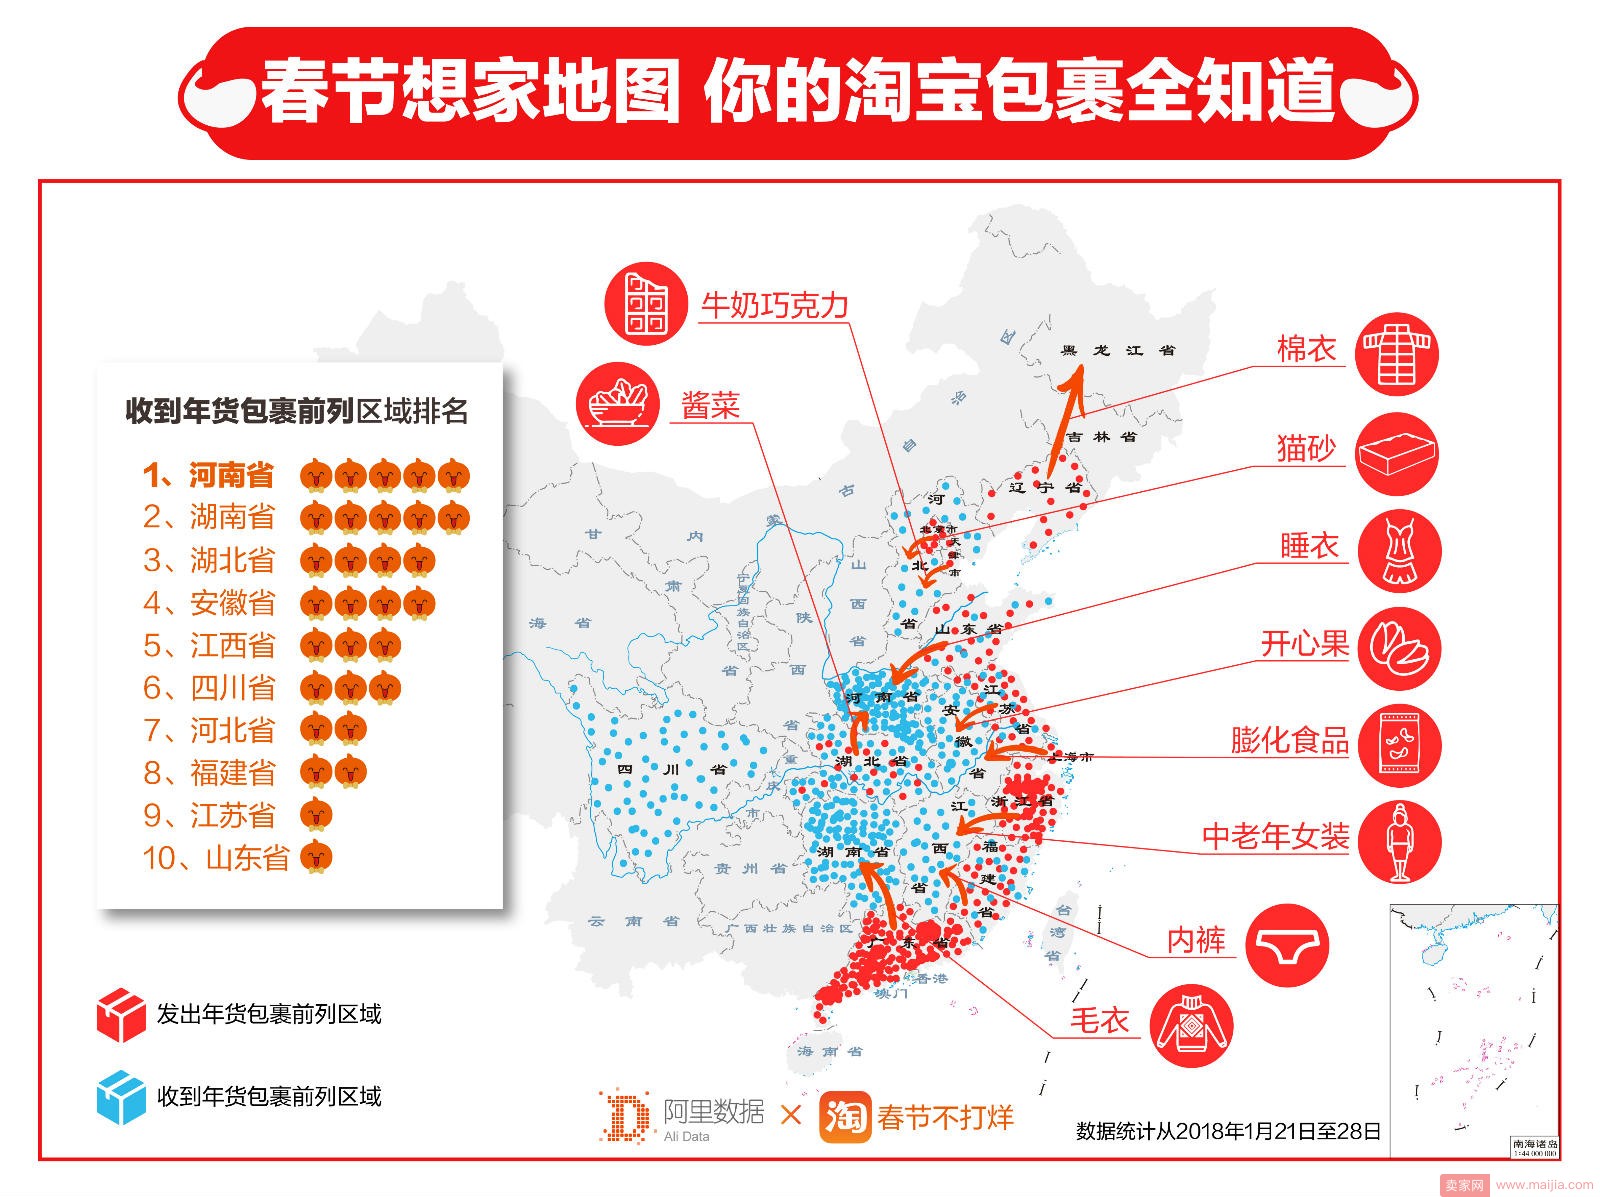 天猫年货消费大数据 勾勒中国人“亲情地图”